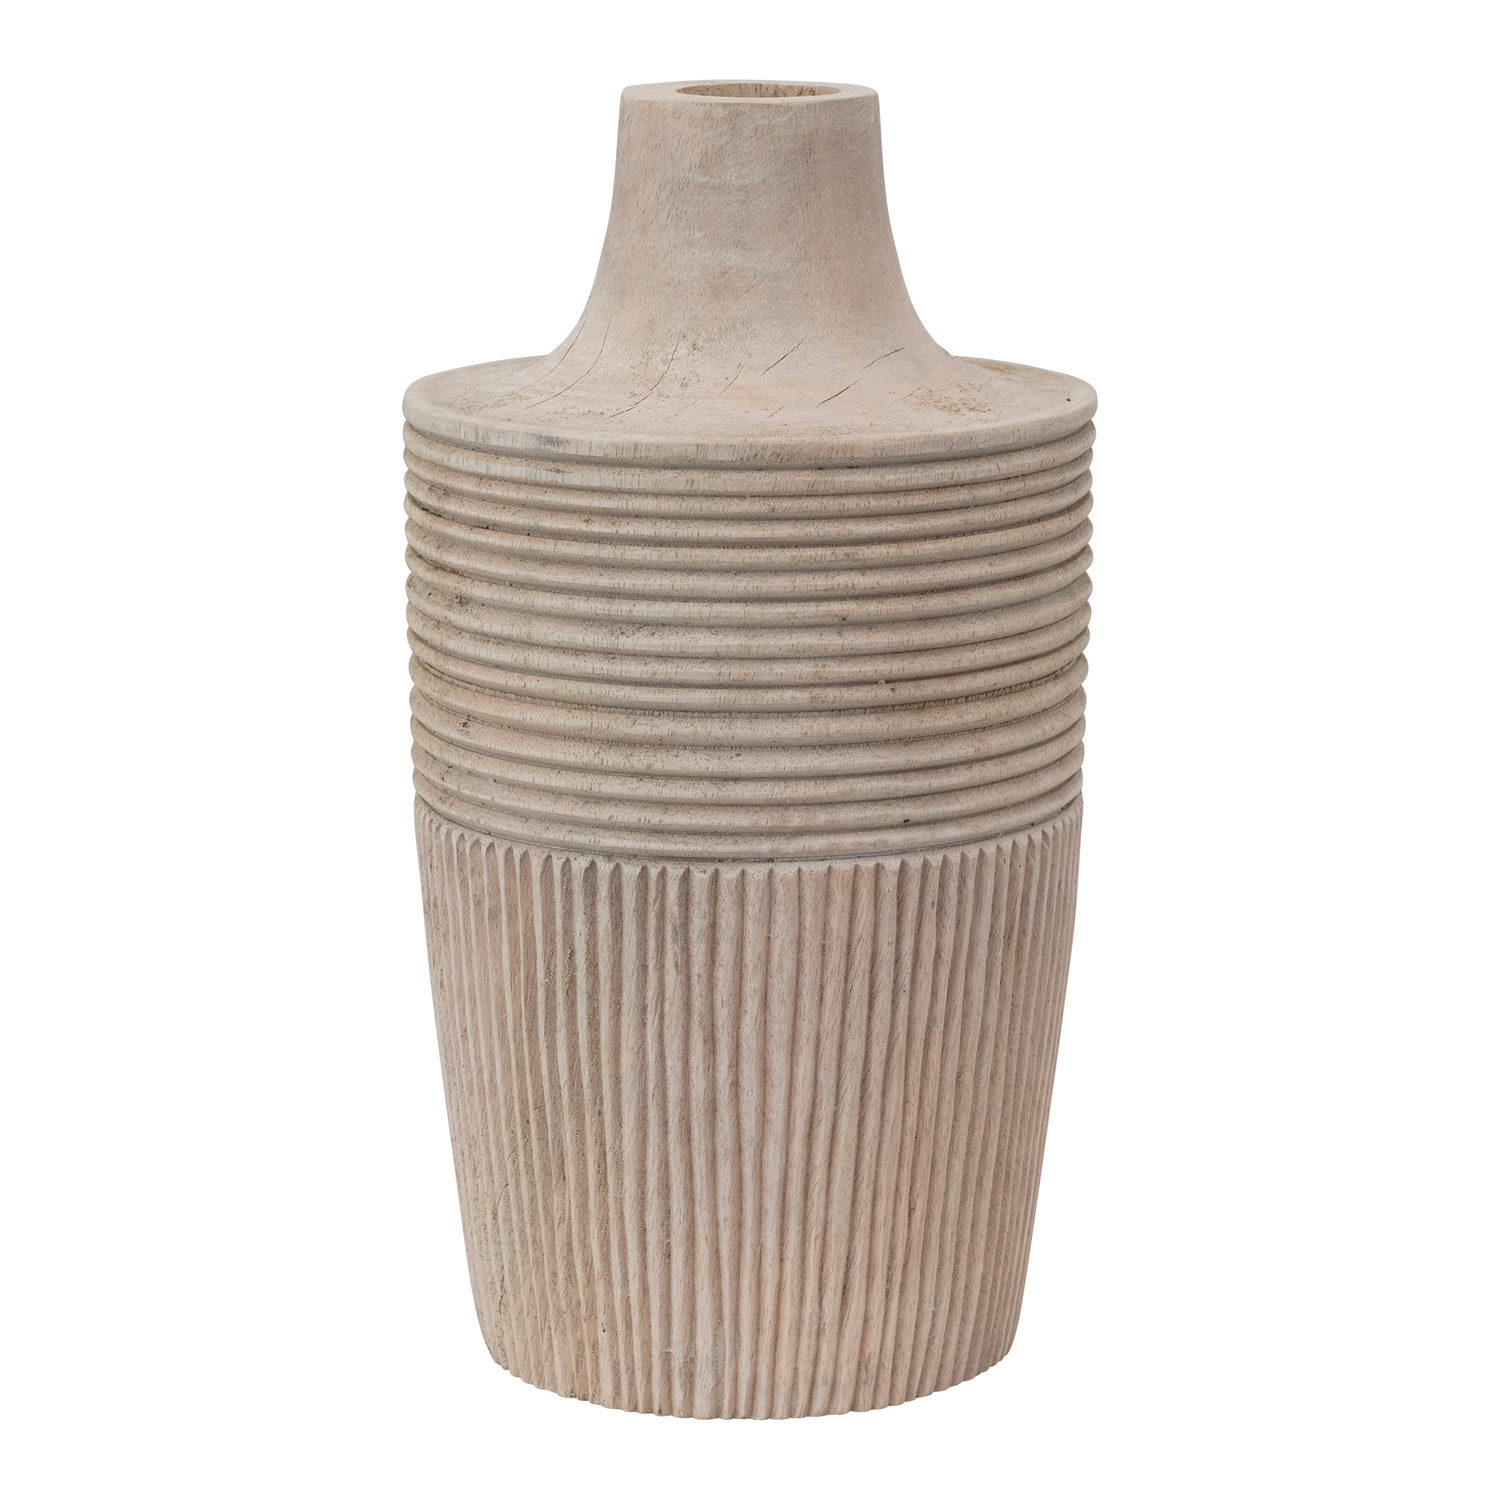 Decorative Hand-Carved Mango Wood Vase - Image 0